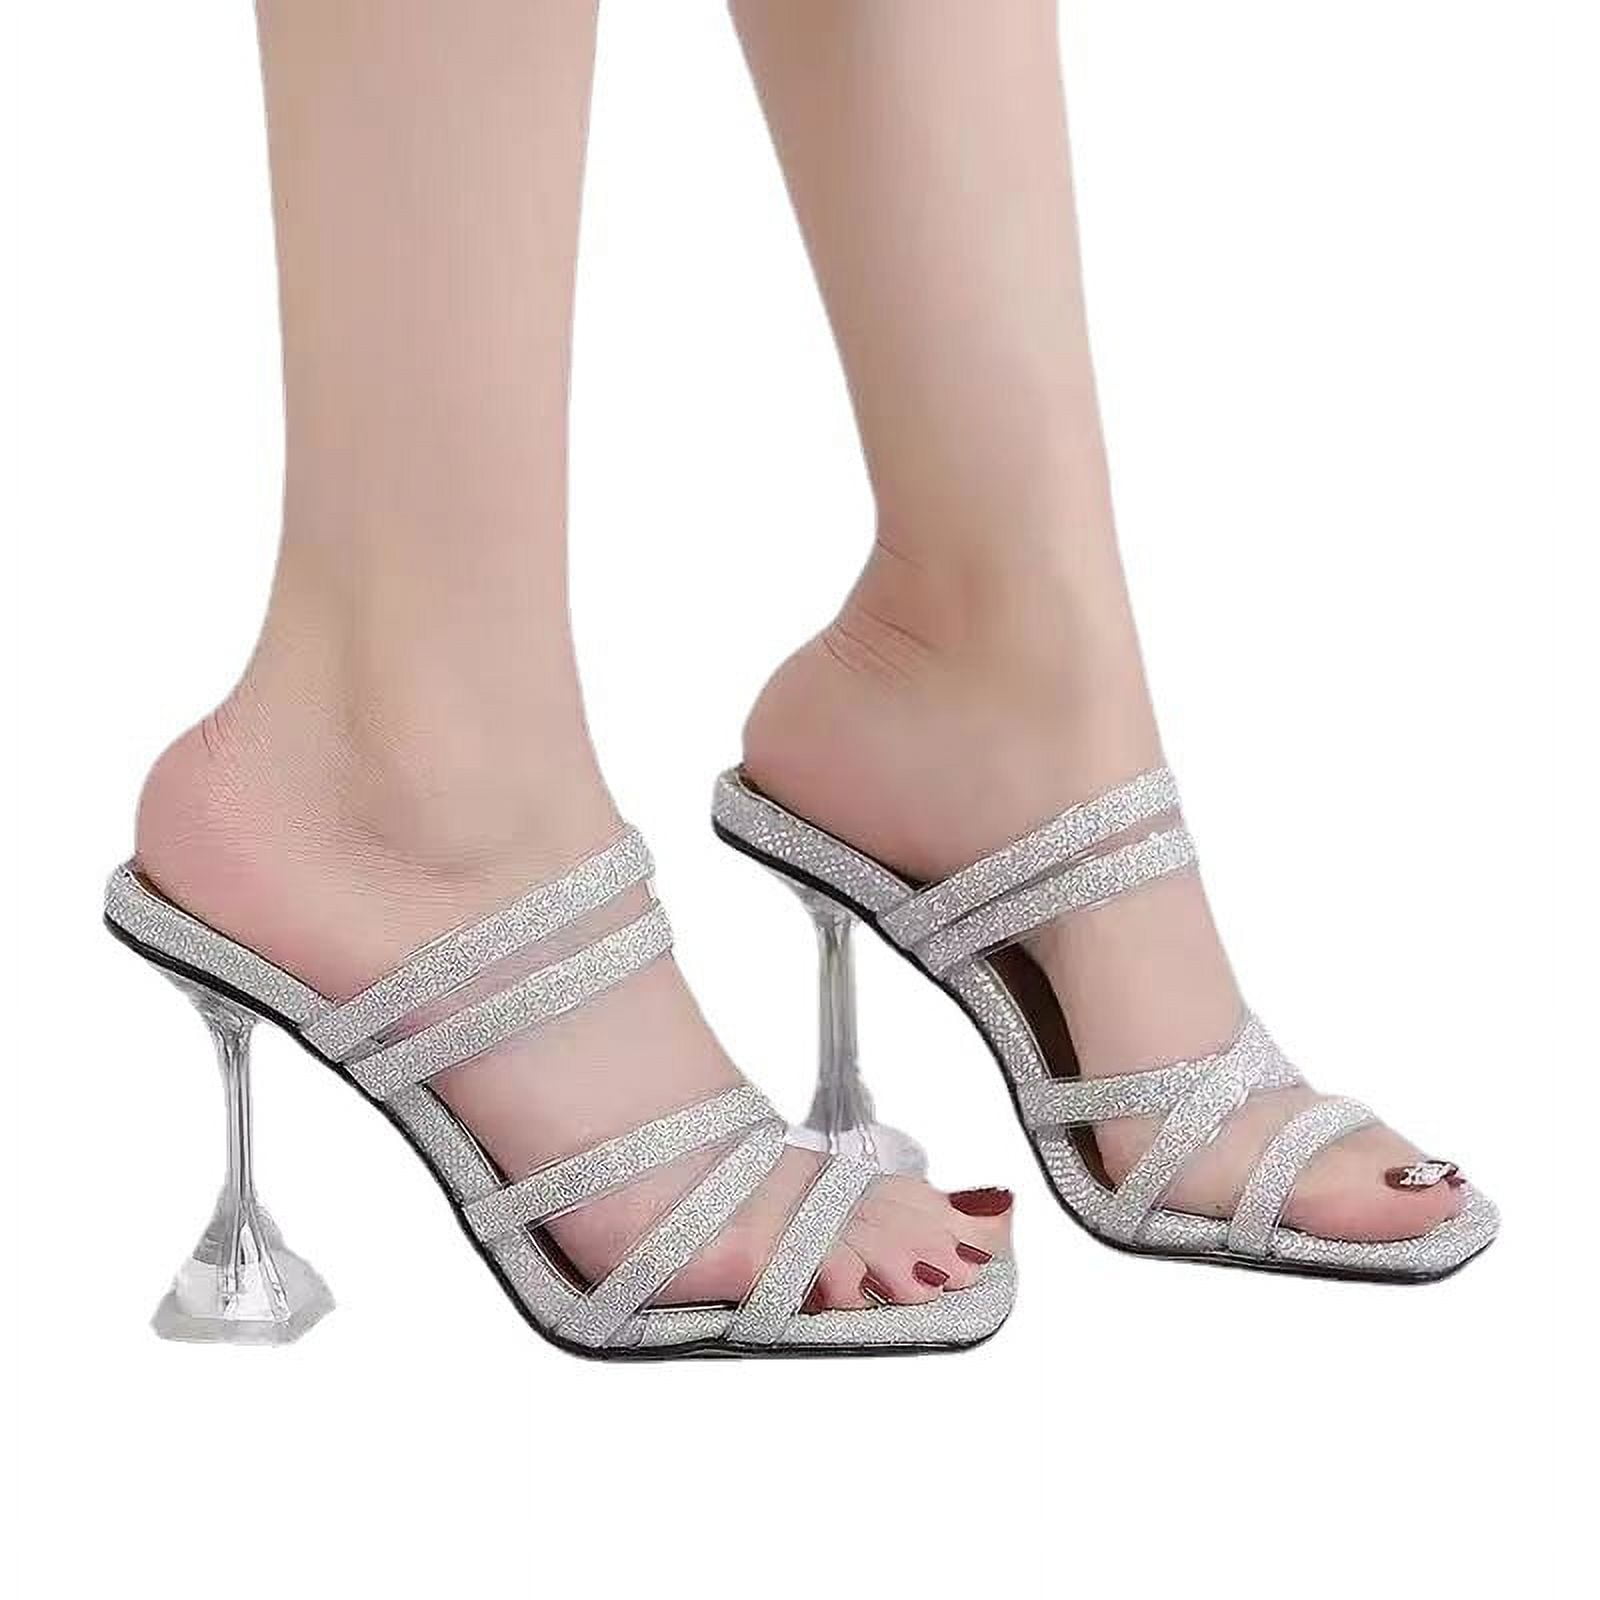 New Women's Shoes Db Dk Fashion Rhinestone Silver High Heels Size-10 | eBay